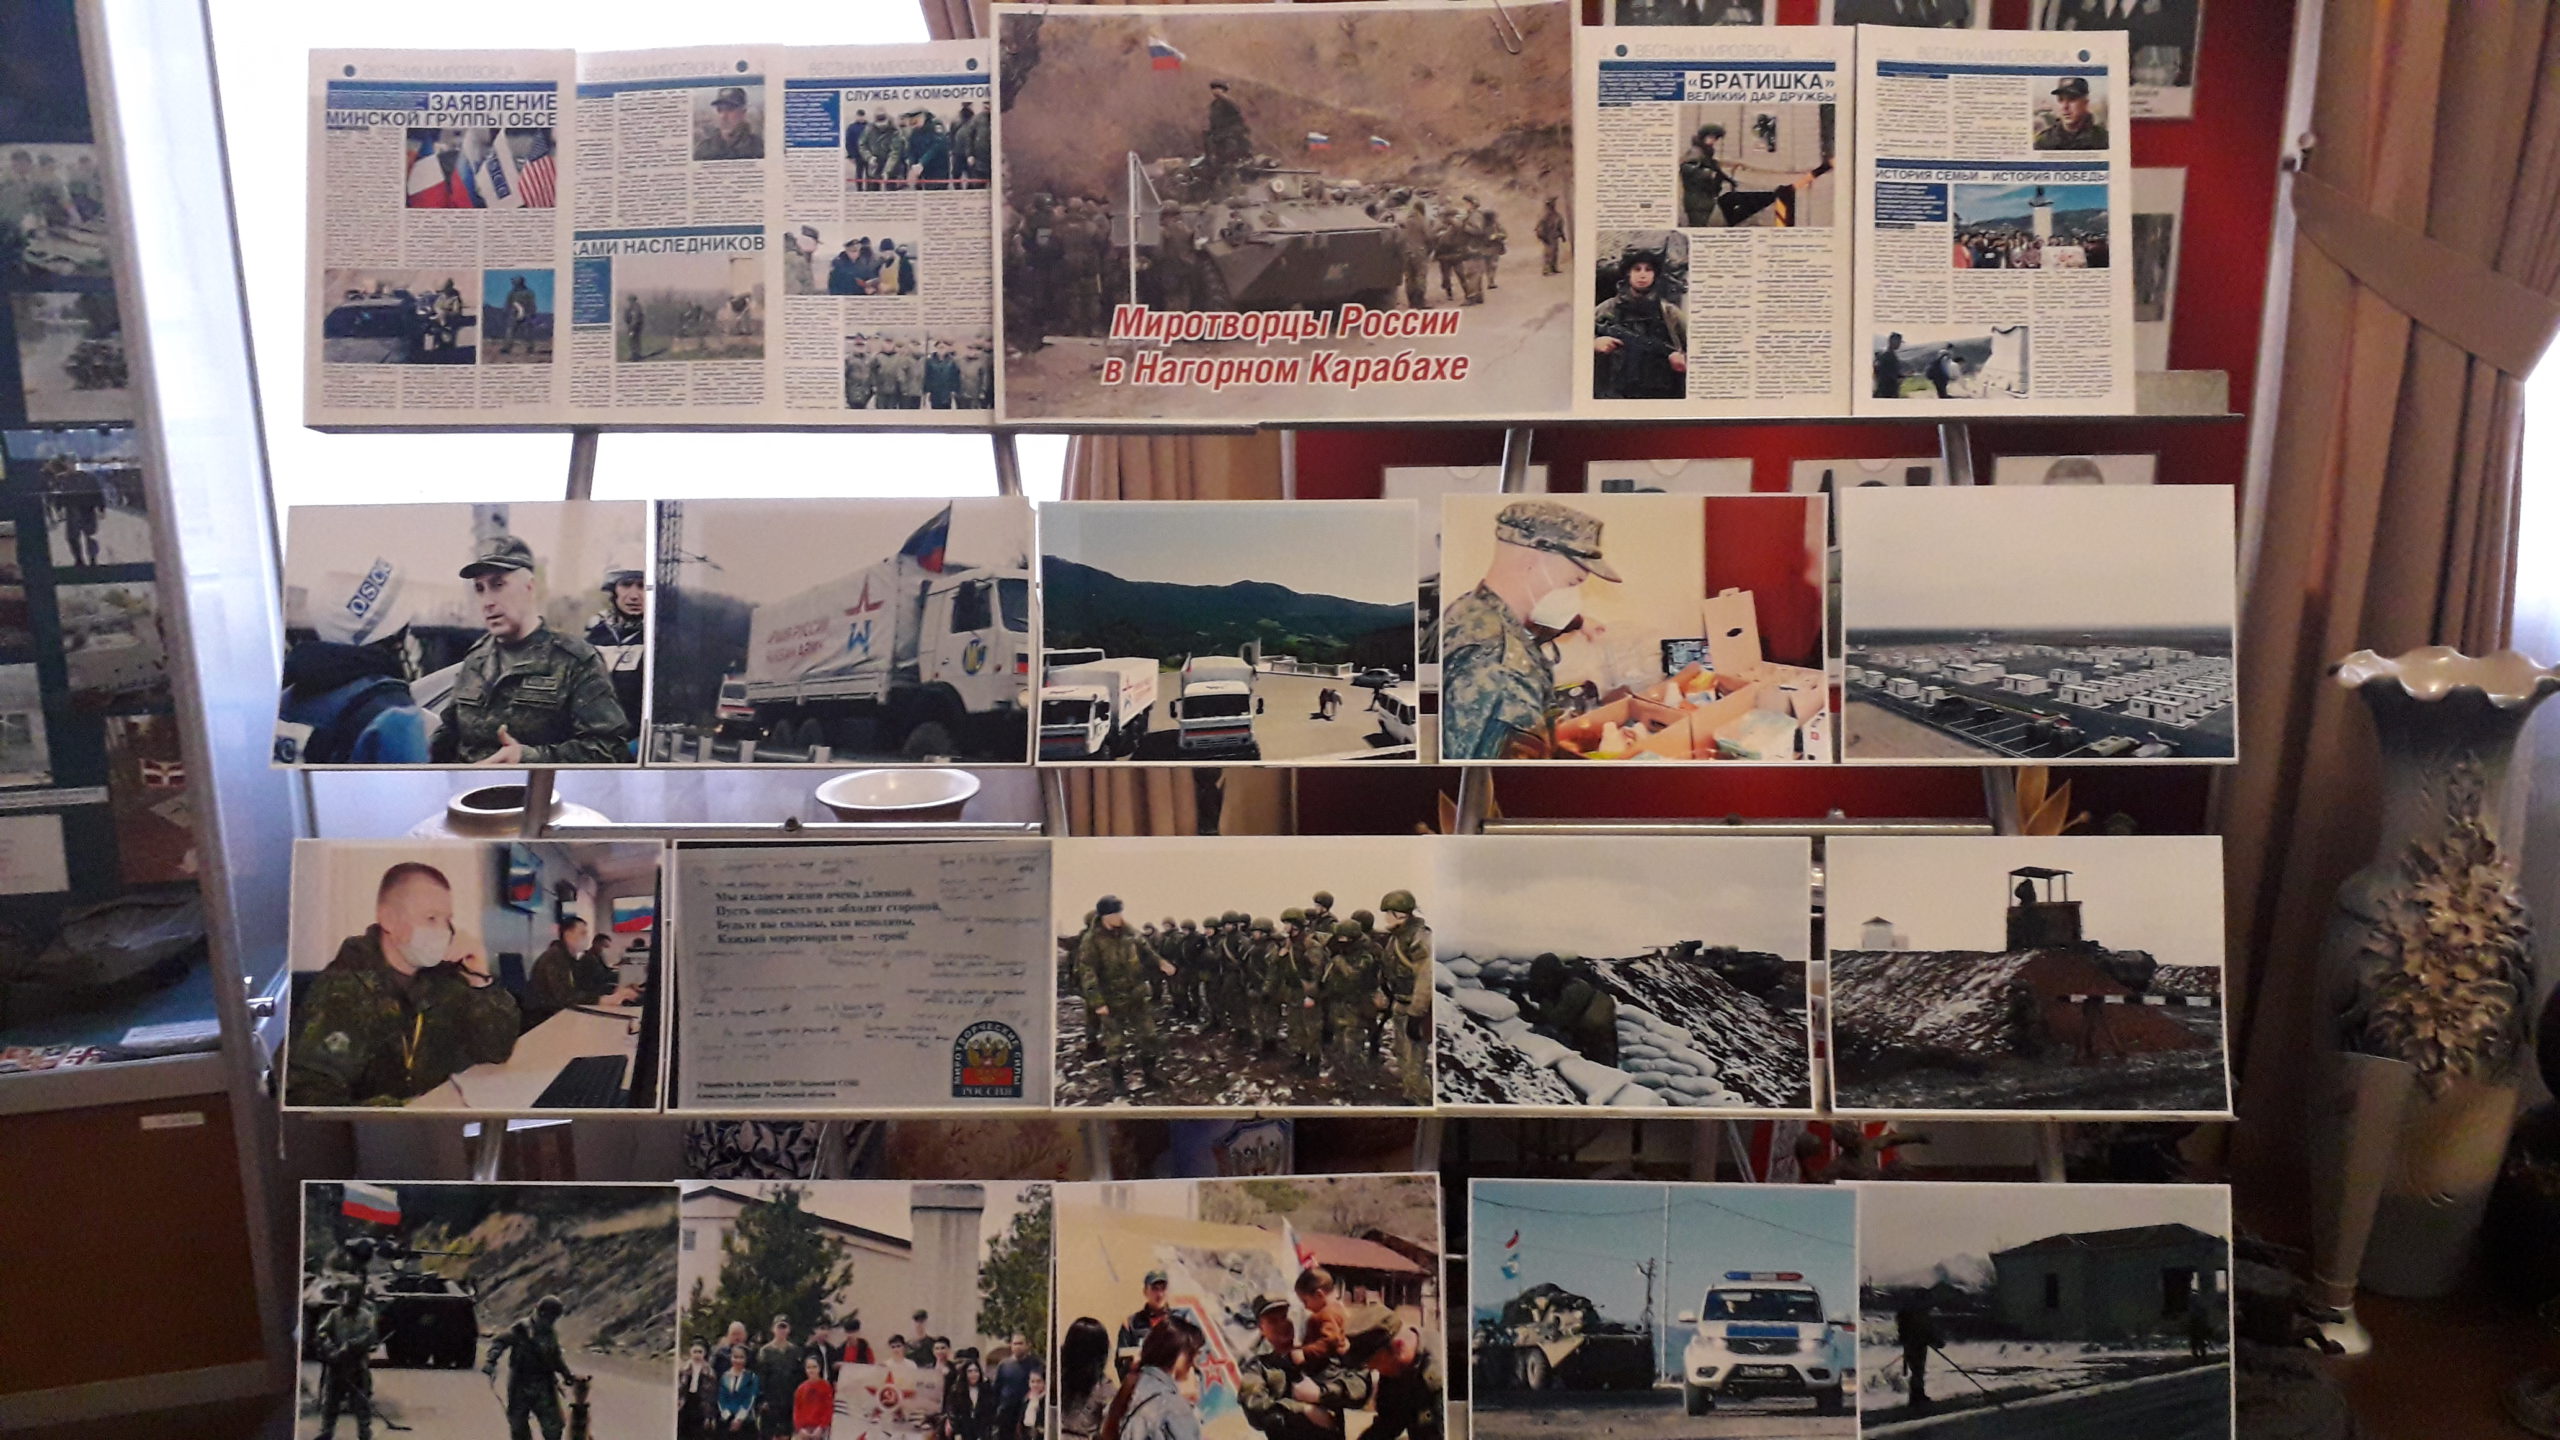 Вы сейчас просматриваете Открытие фотовыставки «Миротворцы России в Нагорном Карабахе», к годовщине начала миротворческой миссии военнослужащих Российской Федерации в Нагорном Карабахе (10 ноября 2020 года). Совместно с Русским Географическим обществом.